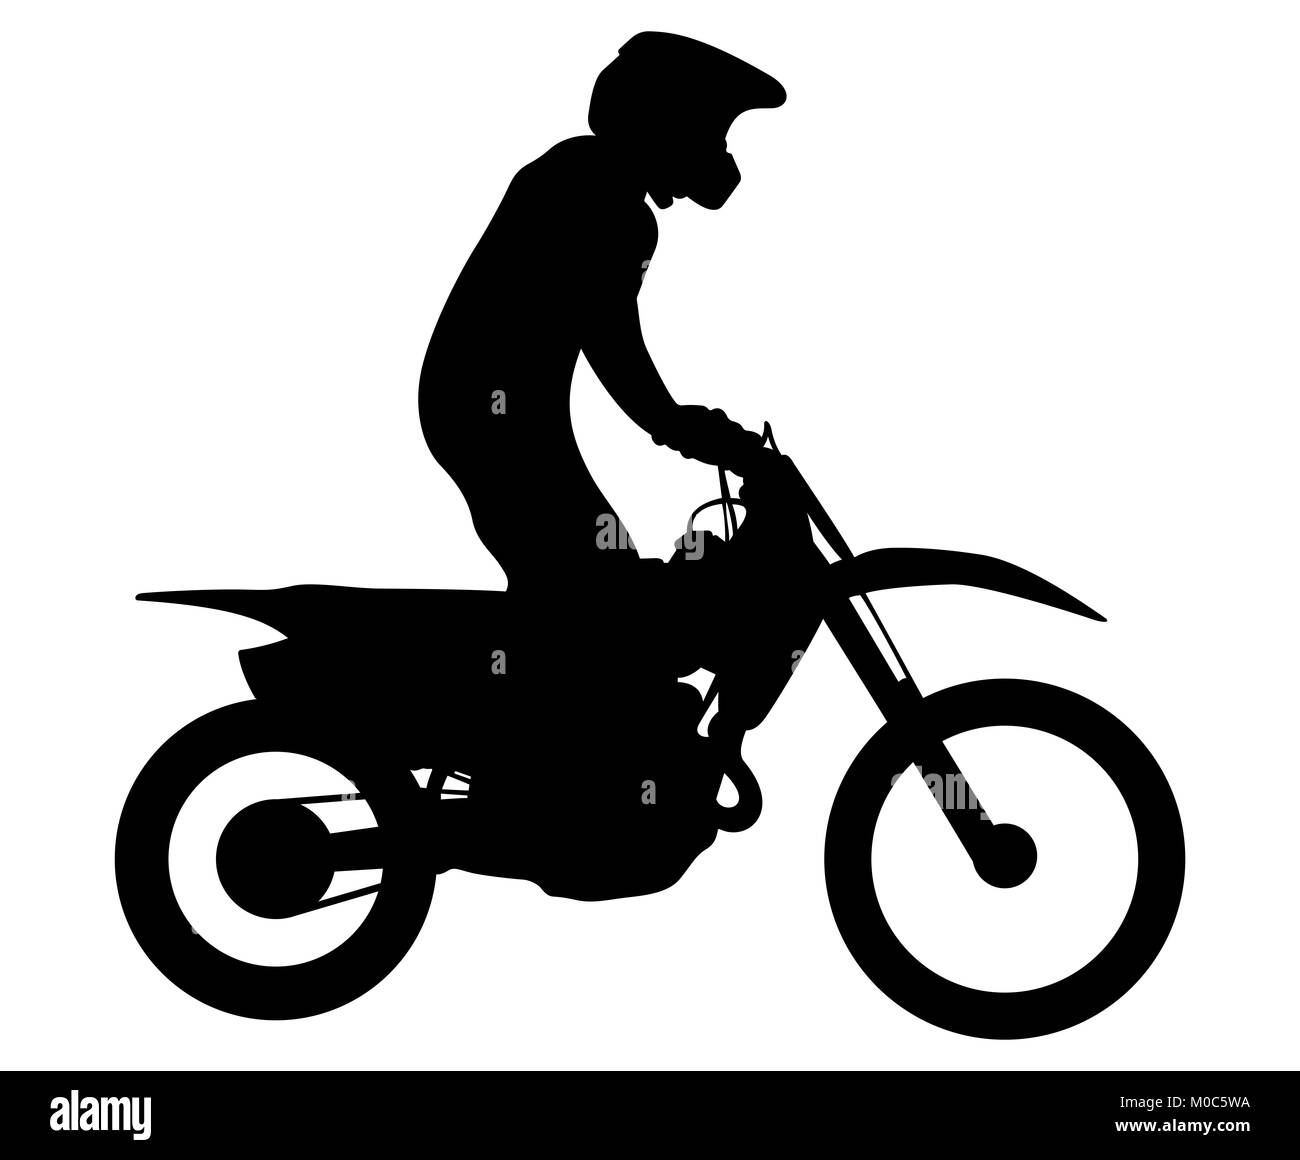 enduro athlete on bike rides motocross black silhouette Stock Photo - Alamy